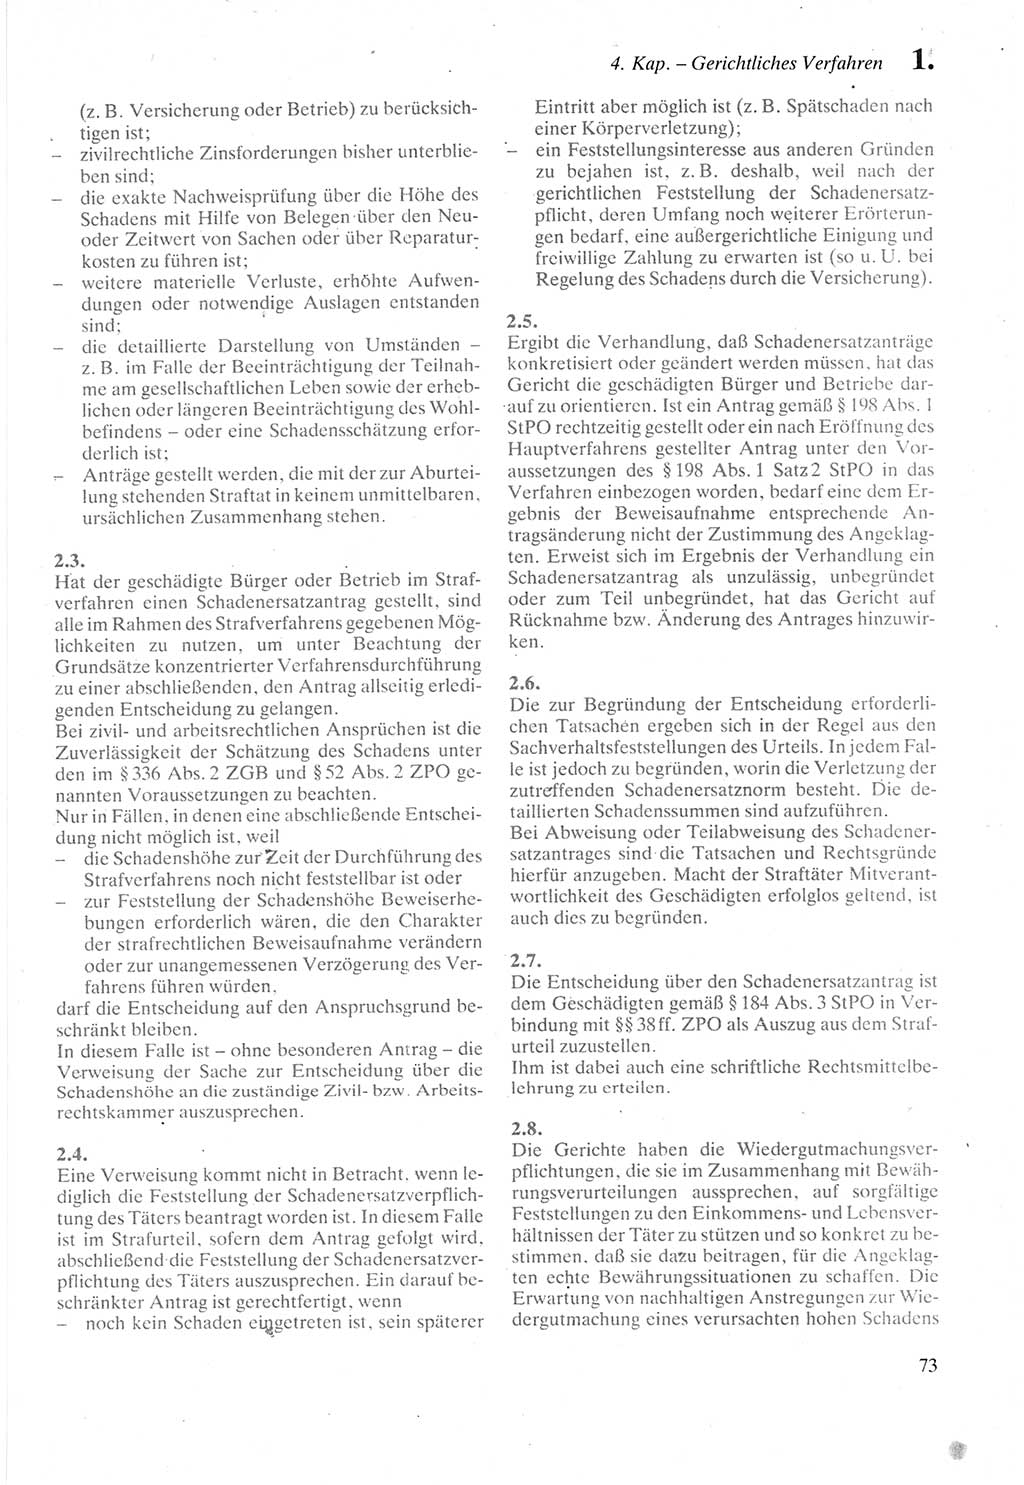 Strafprozeßordnung (StPO) der Deutschen Demokratischen Republik (DDR) sowie angrenzende Gesetze und Bestimmungen 1987, Seite 73 (StPO DDR Ges. Best. 1987, S. 73)